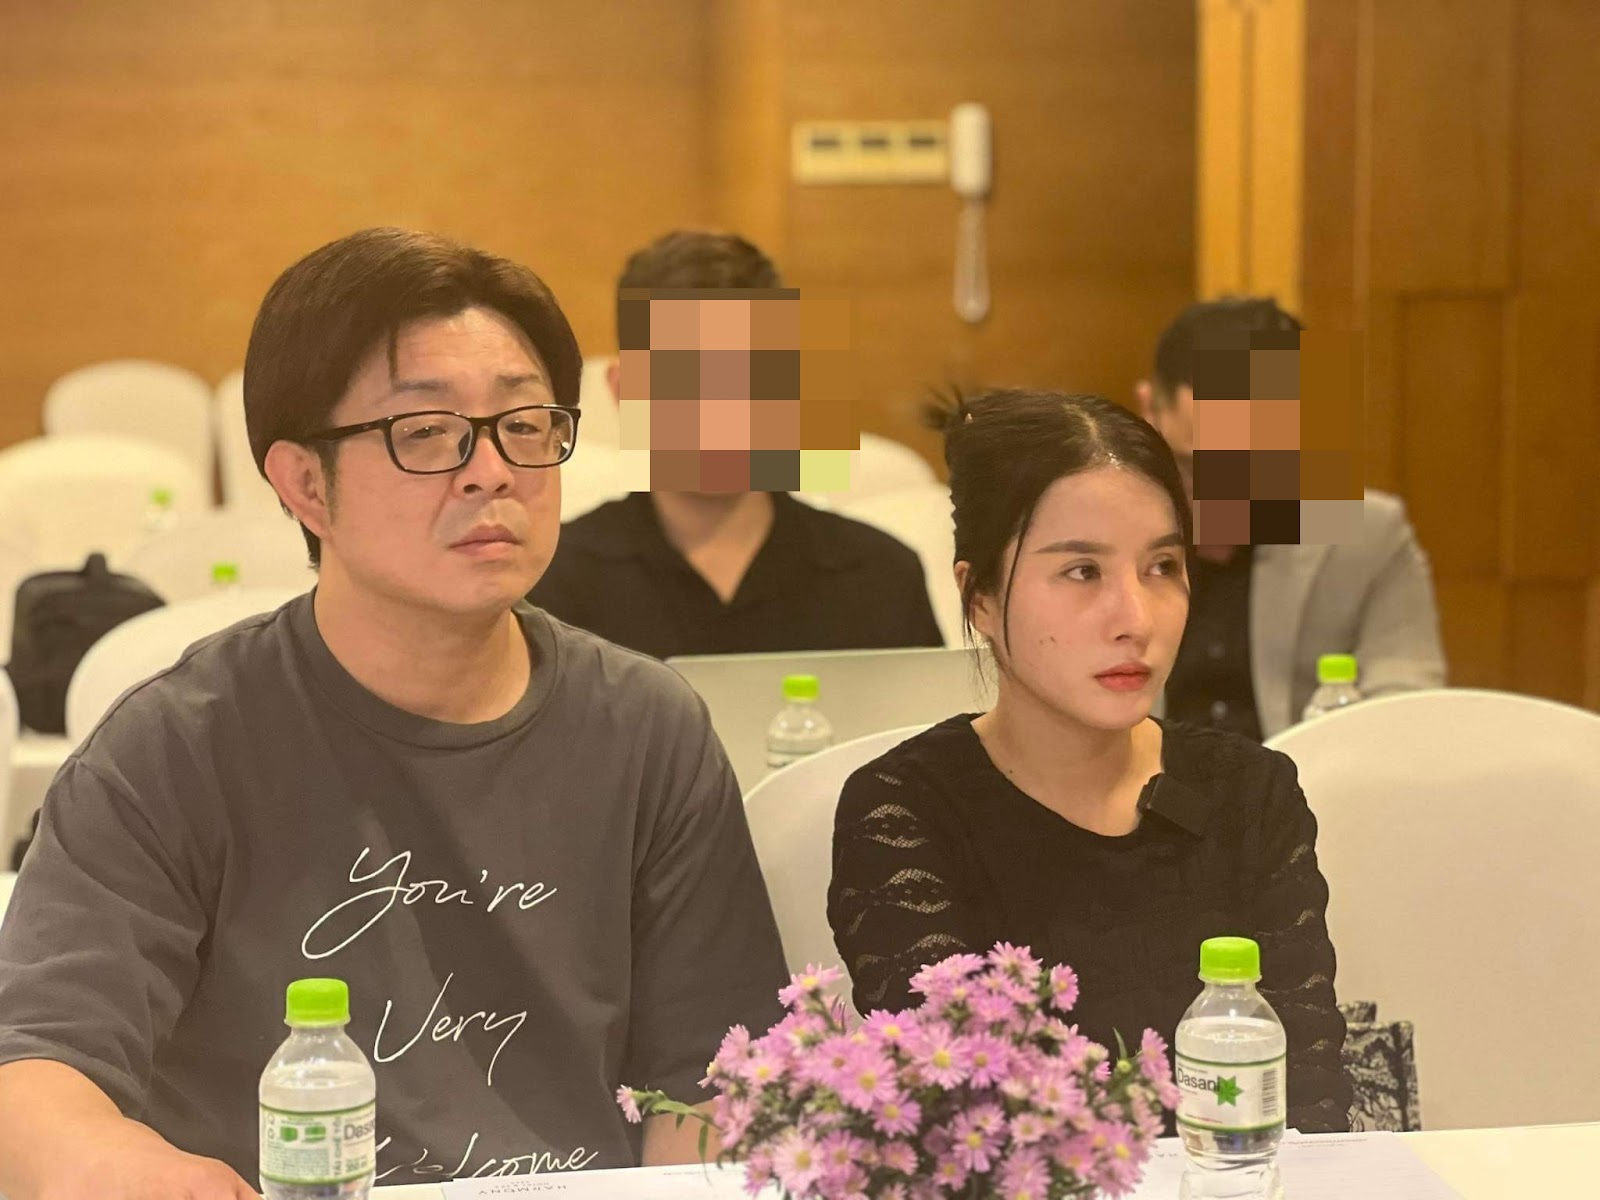 Quỳnh Trần JP tuyên bố bác sĩ Thịnh sai, khẳng định không bênh bà Nhân Vlog, hé lộ 1 bí mật đằng sau - ảnh 9